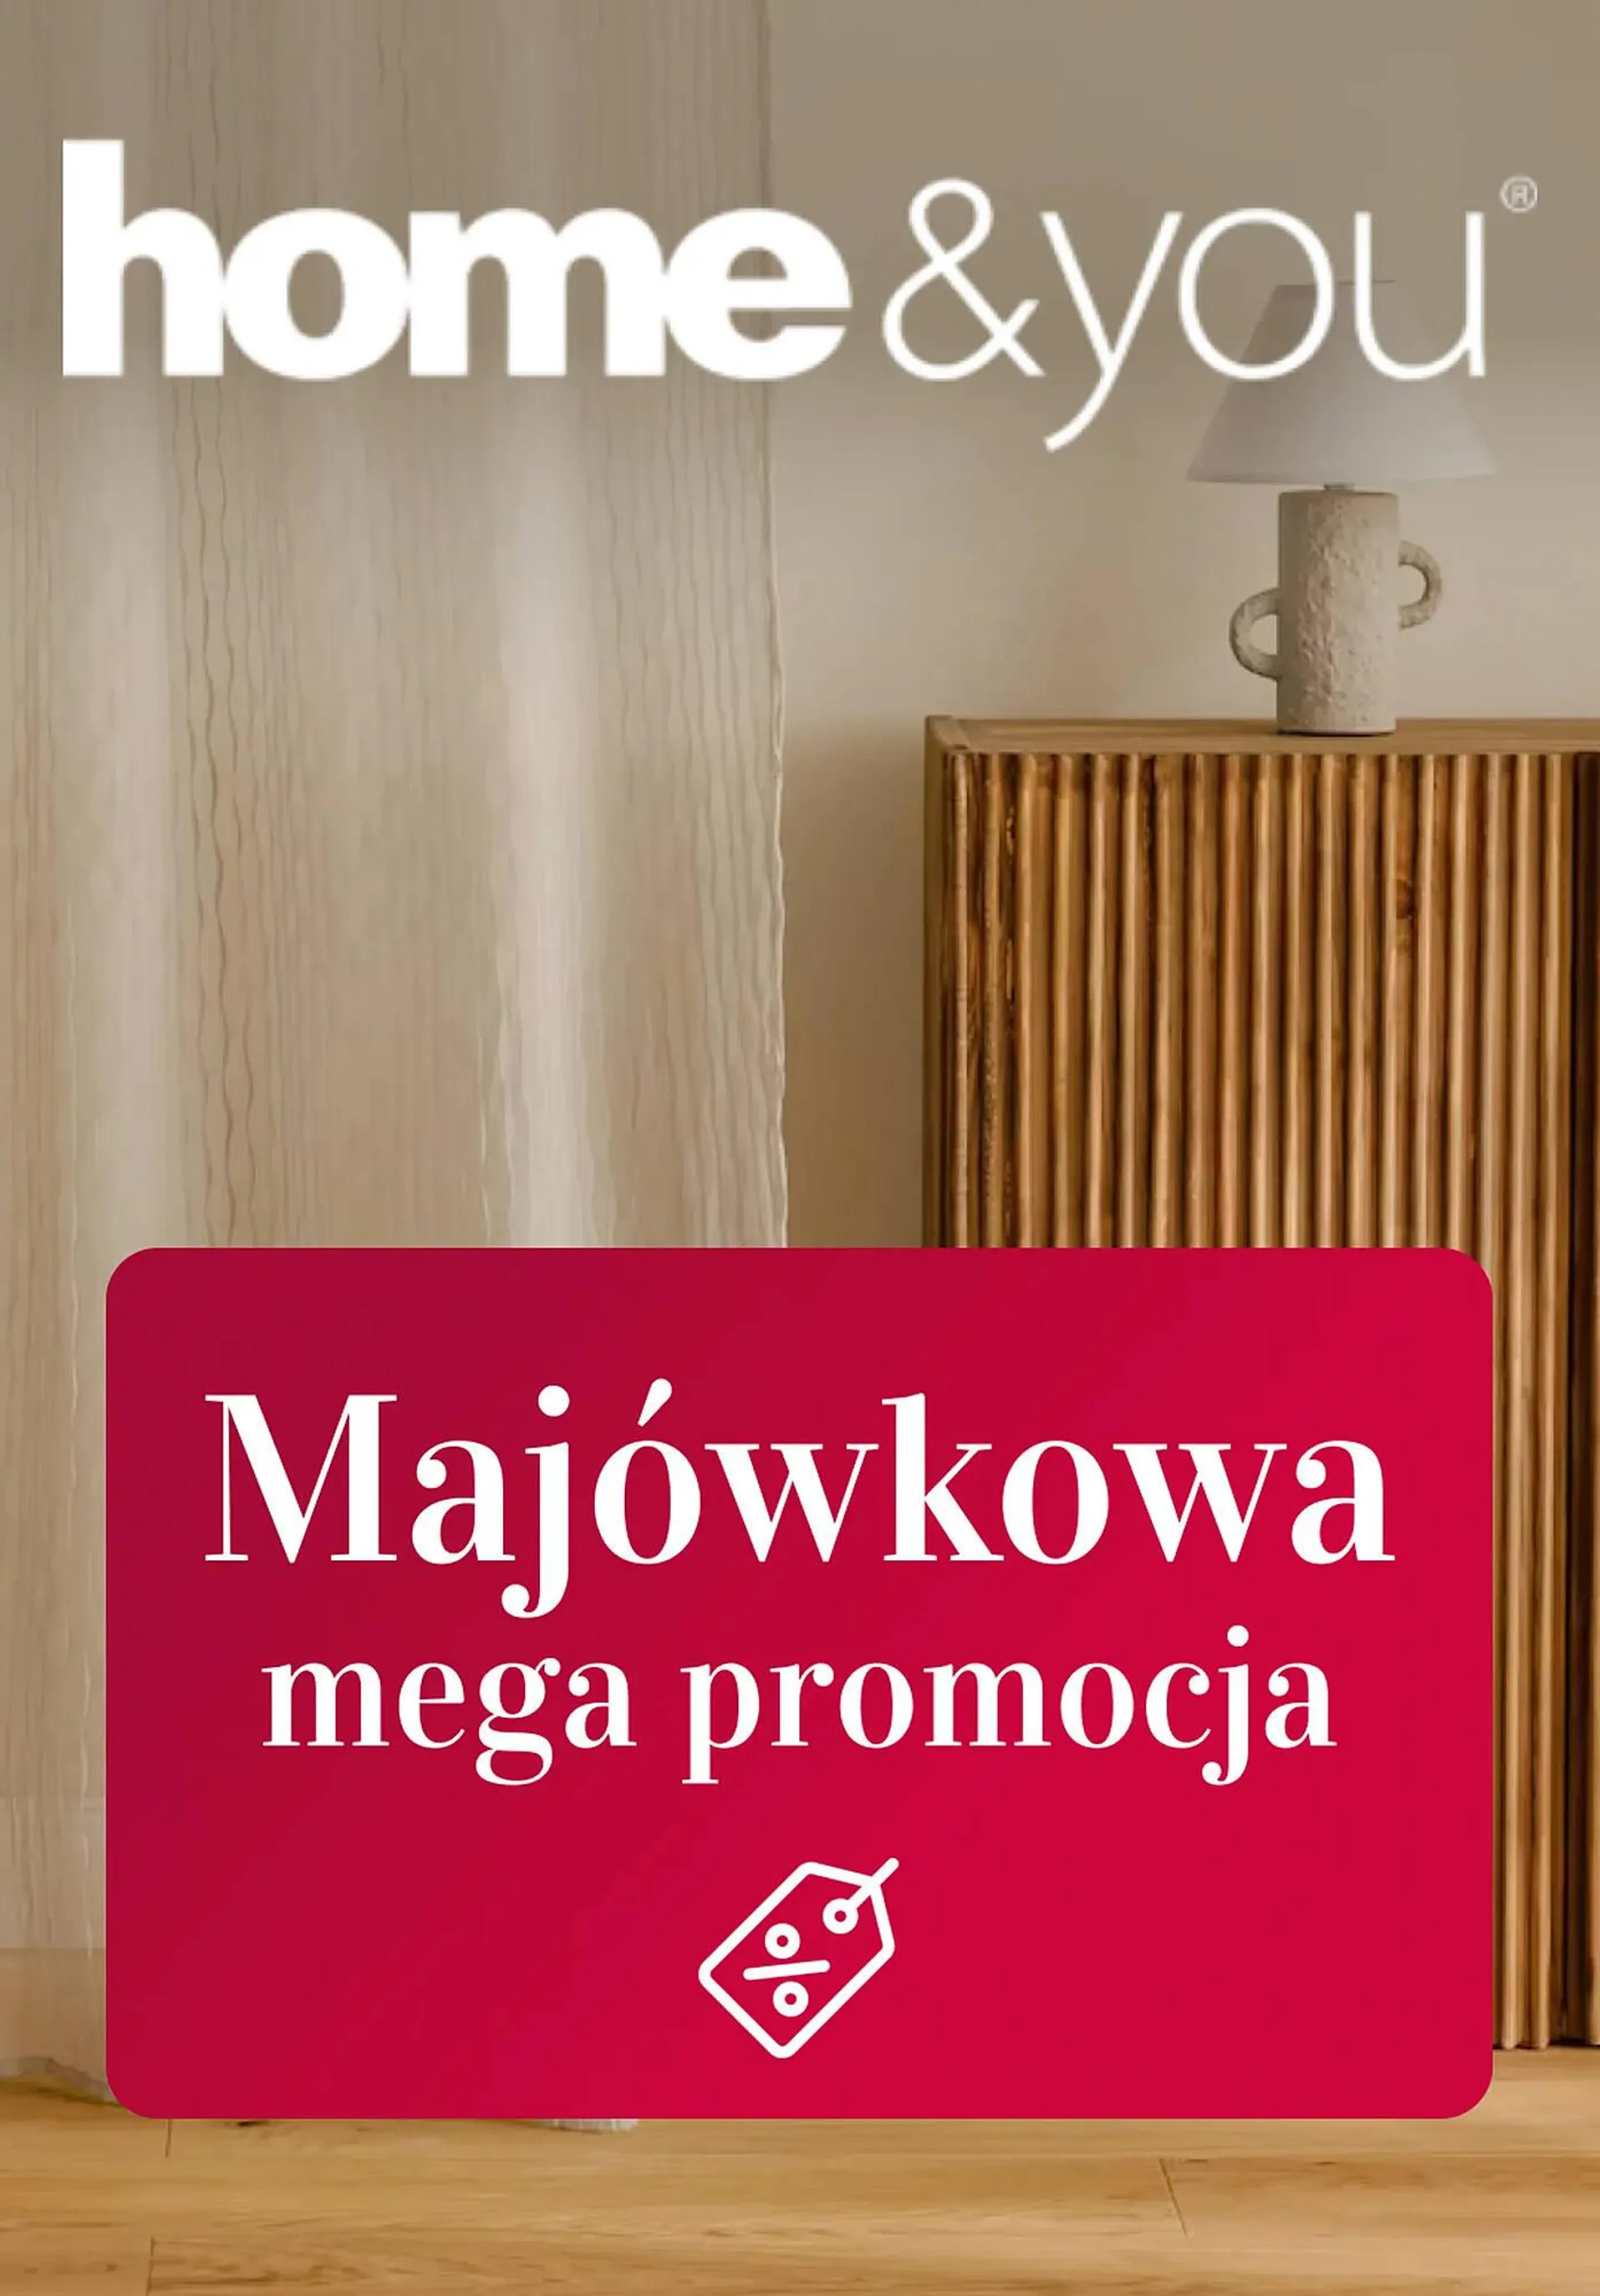 Home&You gazetka - 1